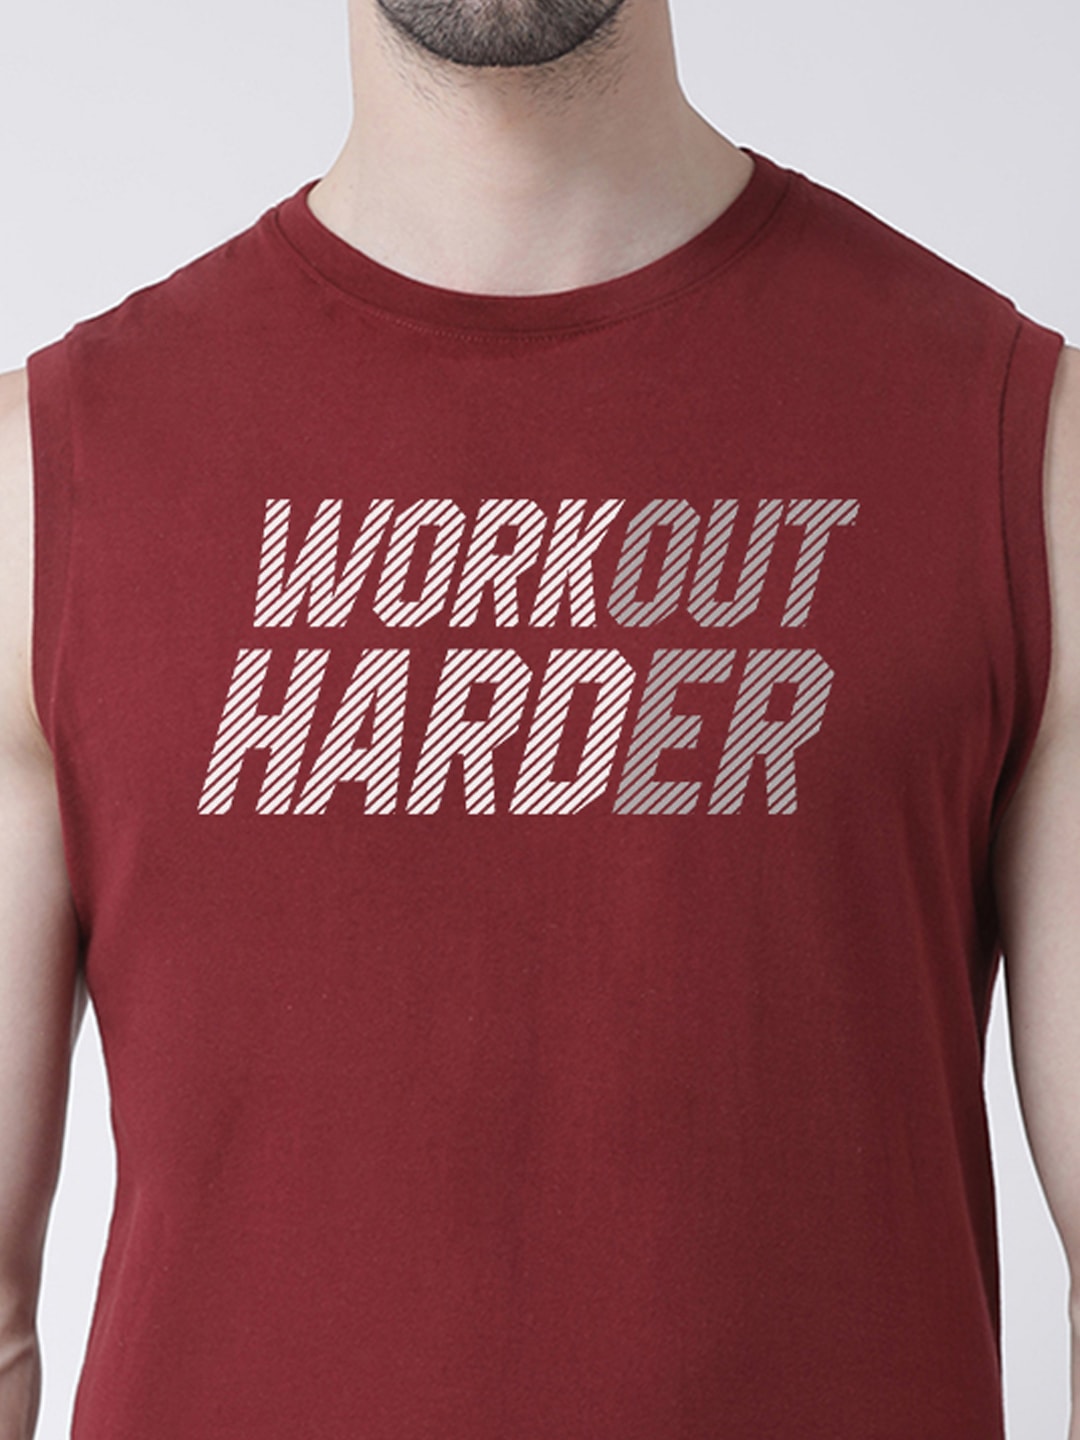 Men Workout Harder Printed Cotton Gym Vest - Friskers